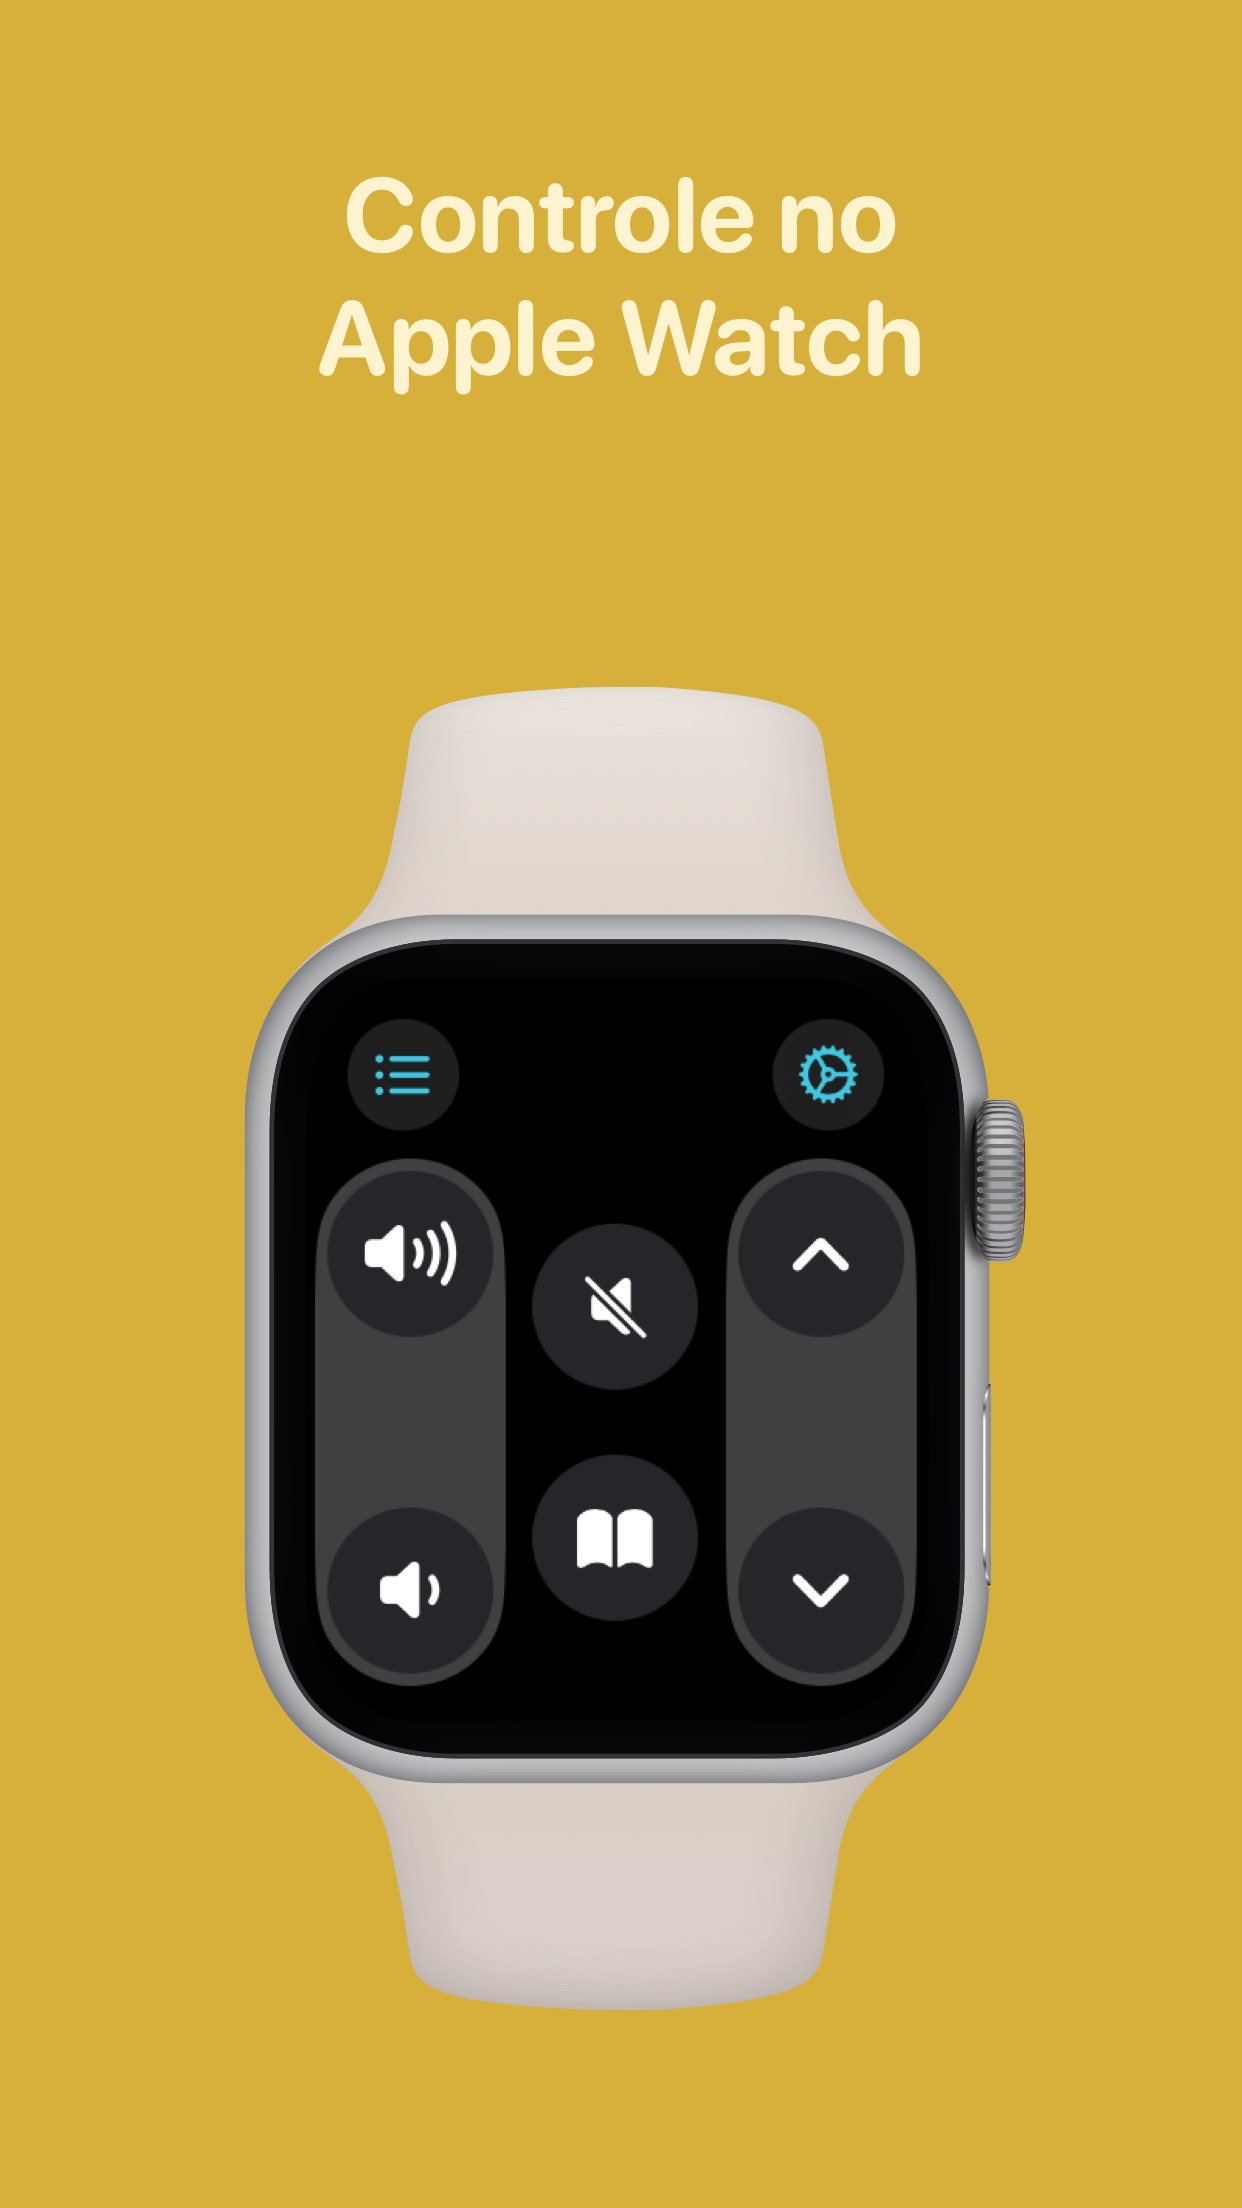 Screenshot do app TV Remote - Controle Remoto